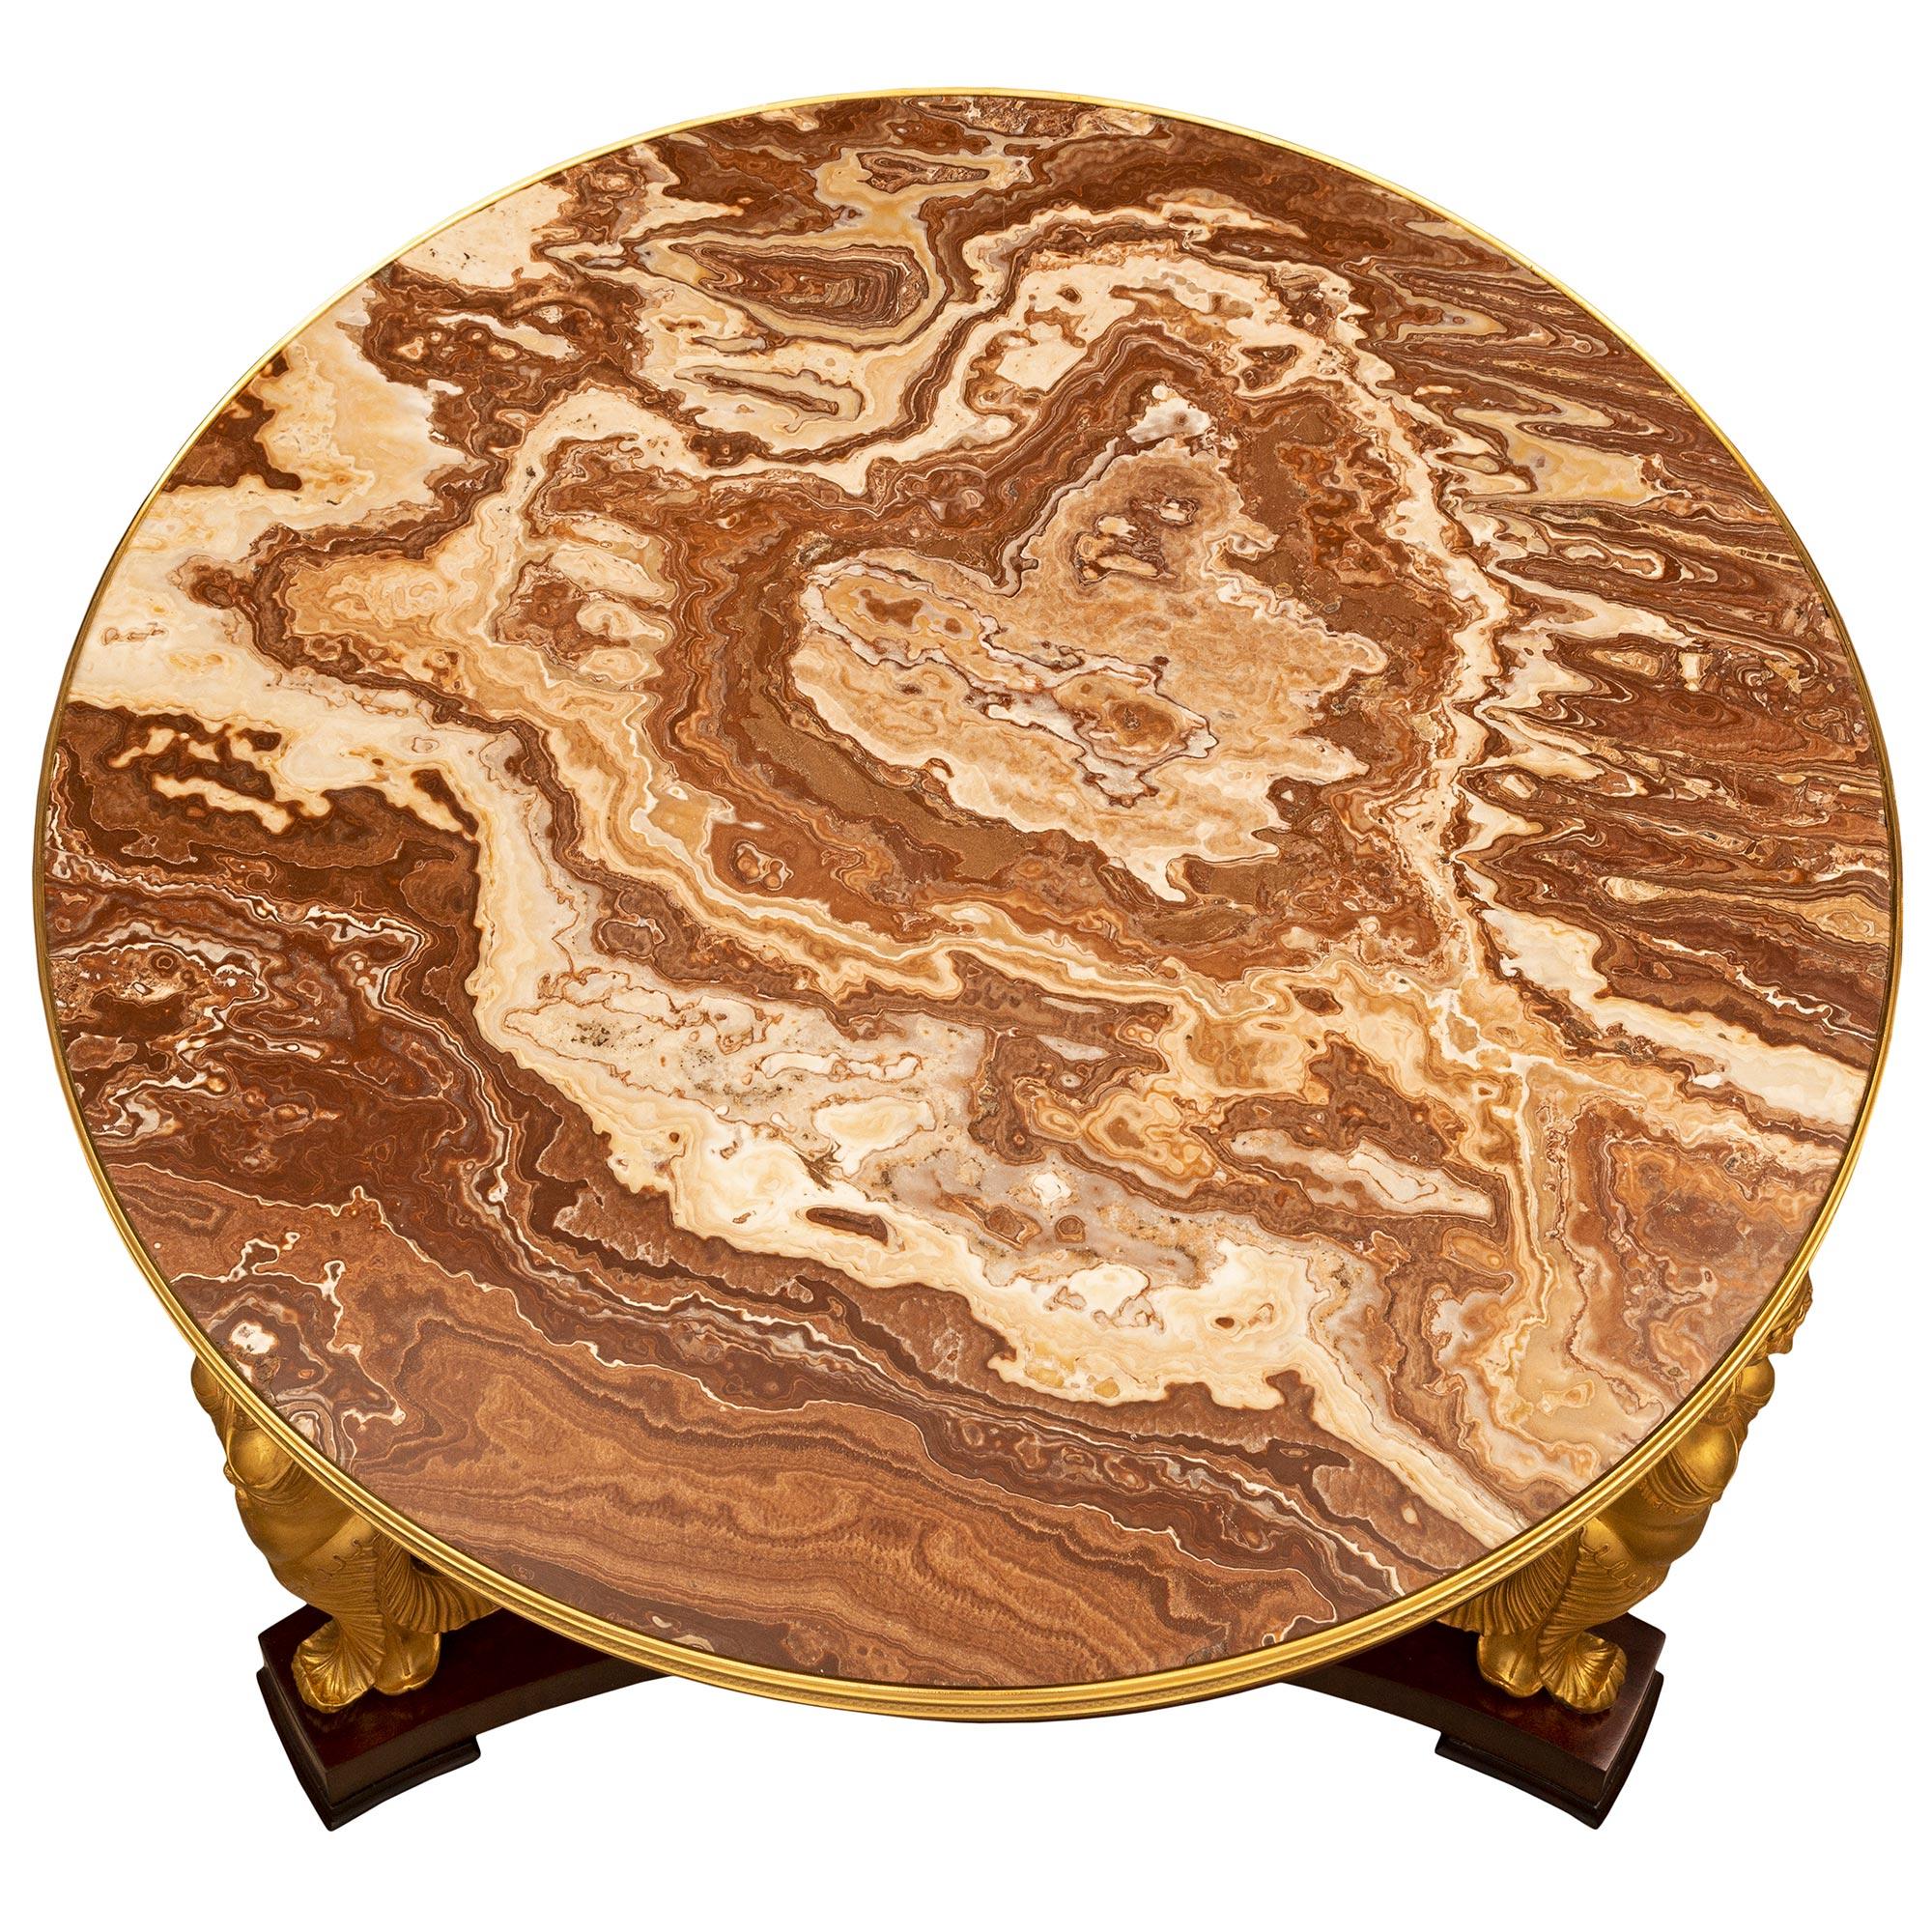 Ein hübscher und beeindruckender französischer Empire-Tisch aus dem 19. Jahrhundert aus Mahagoni, Goldholz, Ormolu und Alabastro-Marmor. Der runde Tisch steht auf eleganten Kugelfüßen unter der dreieckigen Bodenplatte mit den schönen konkaven